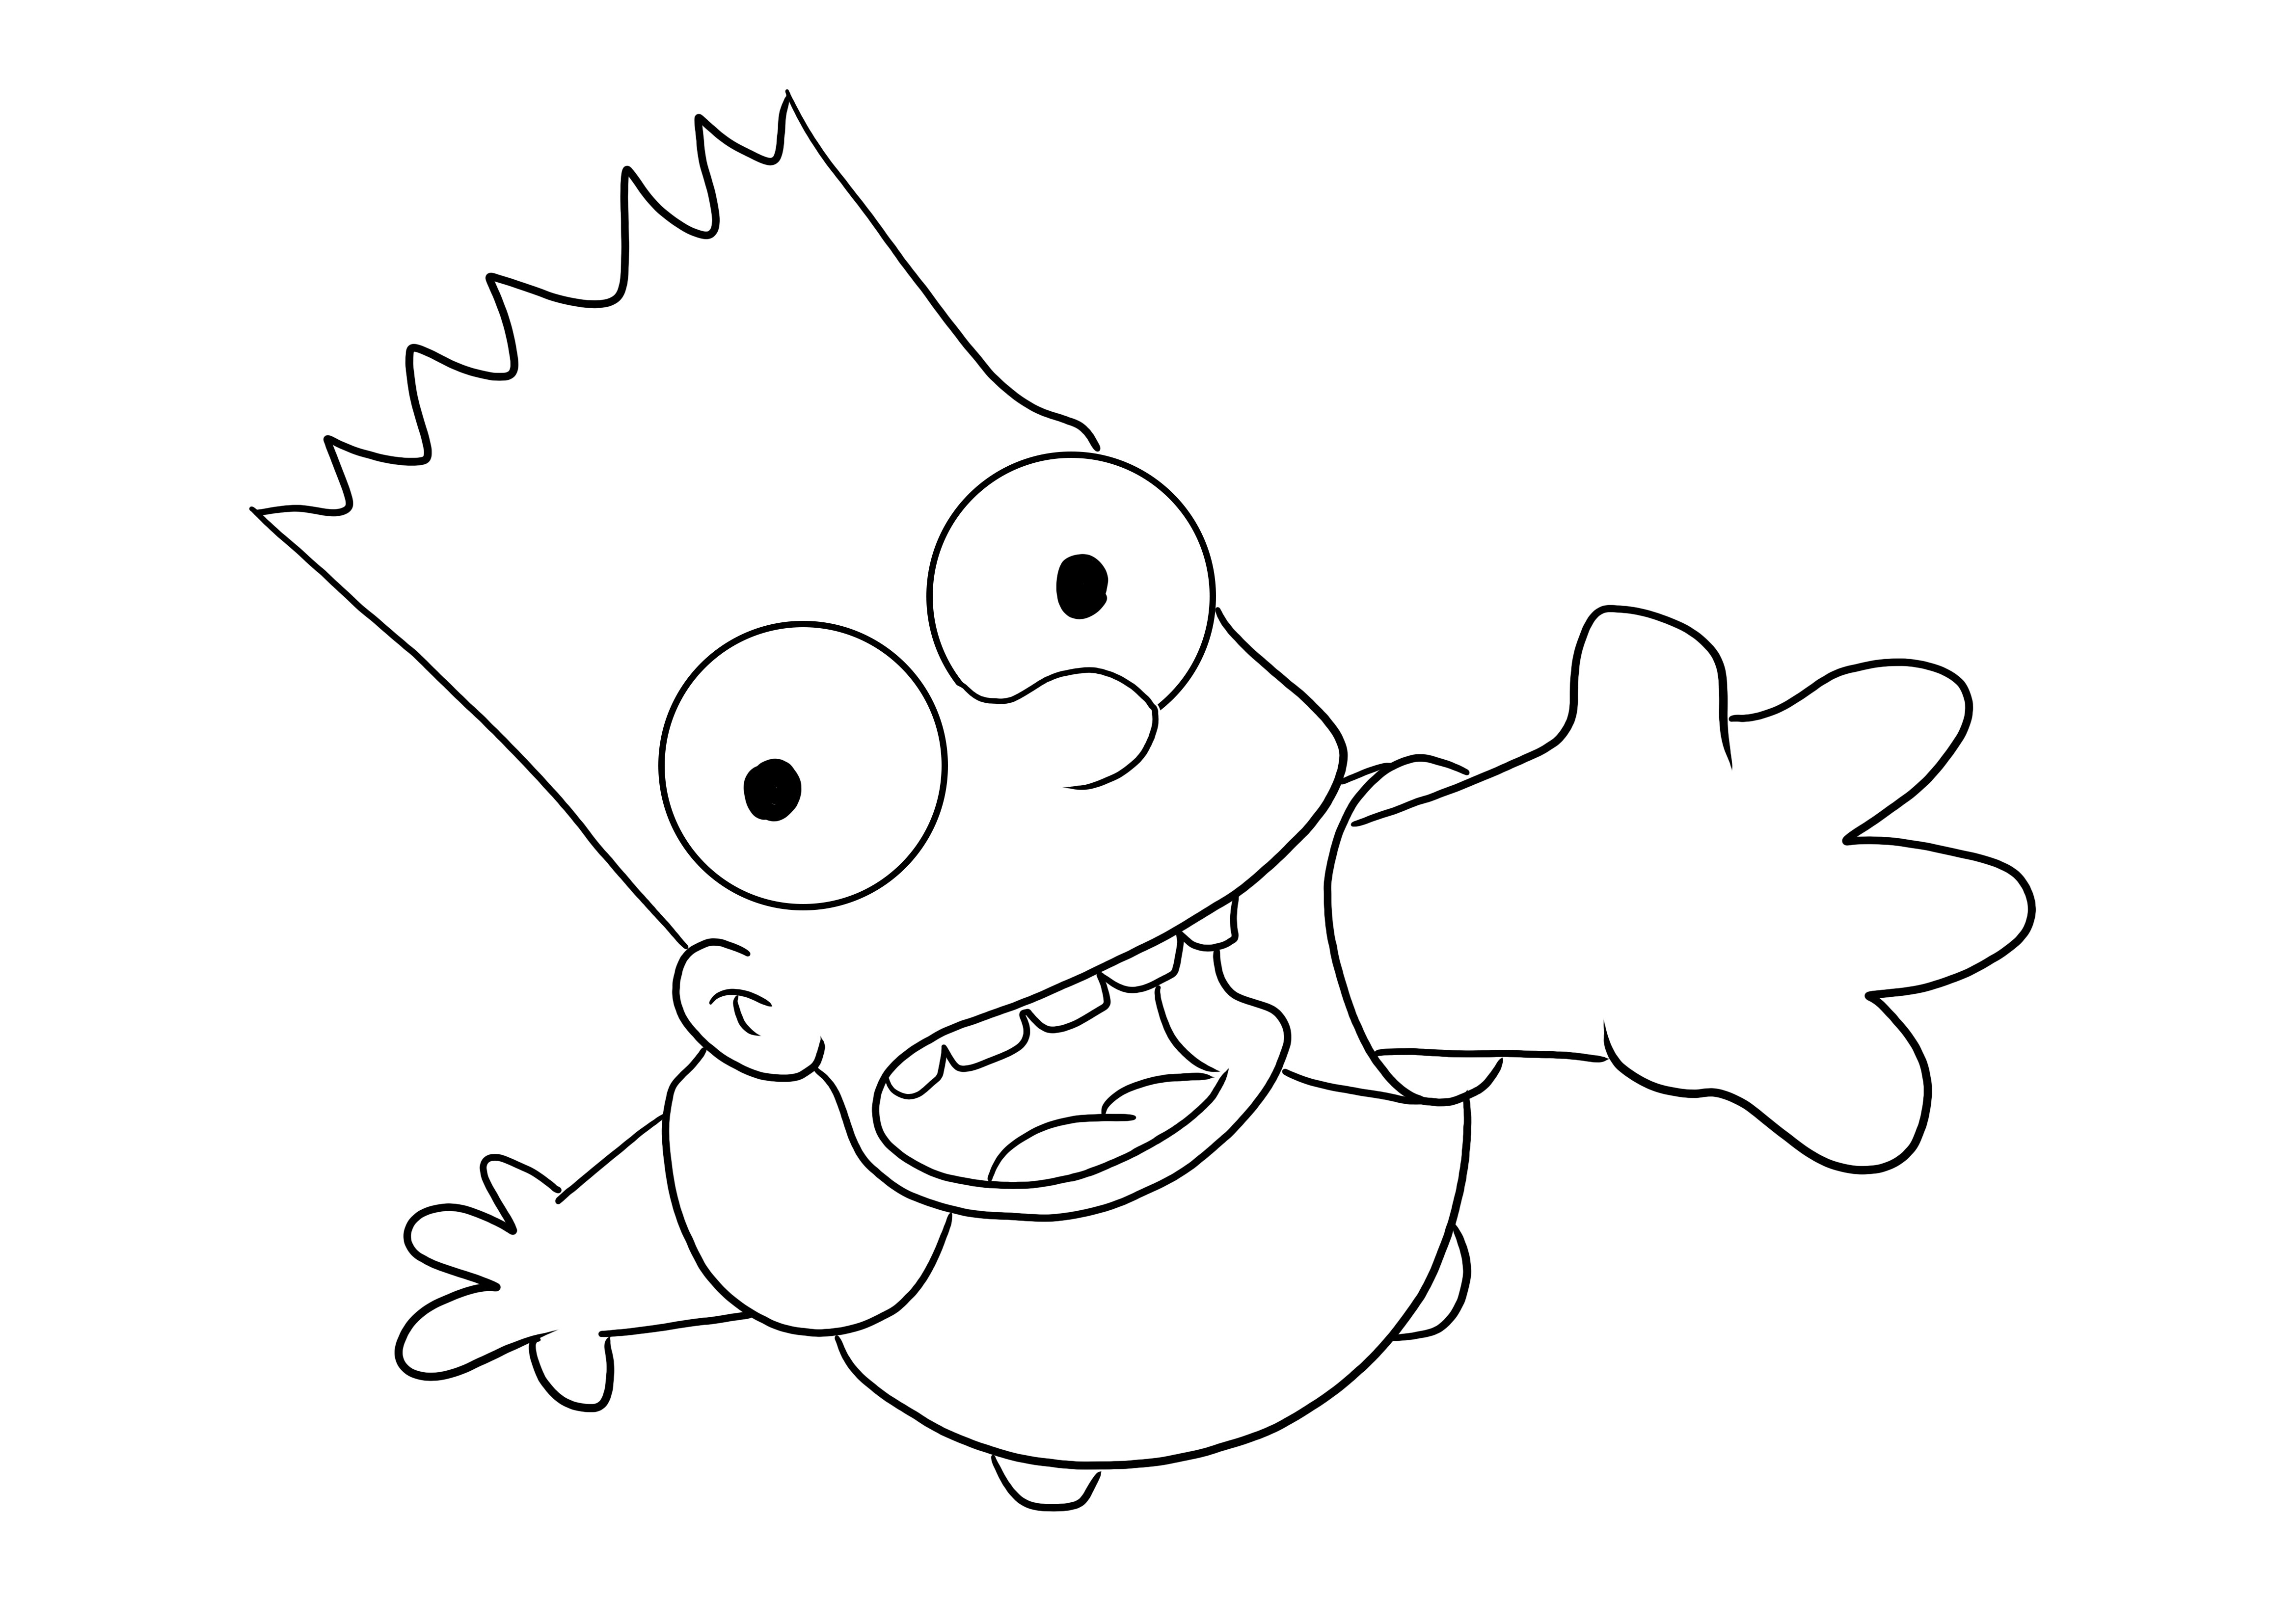 Bart ingyenesen letölthető és nyomtatható oldal gyerekeknek